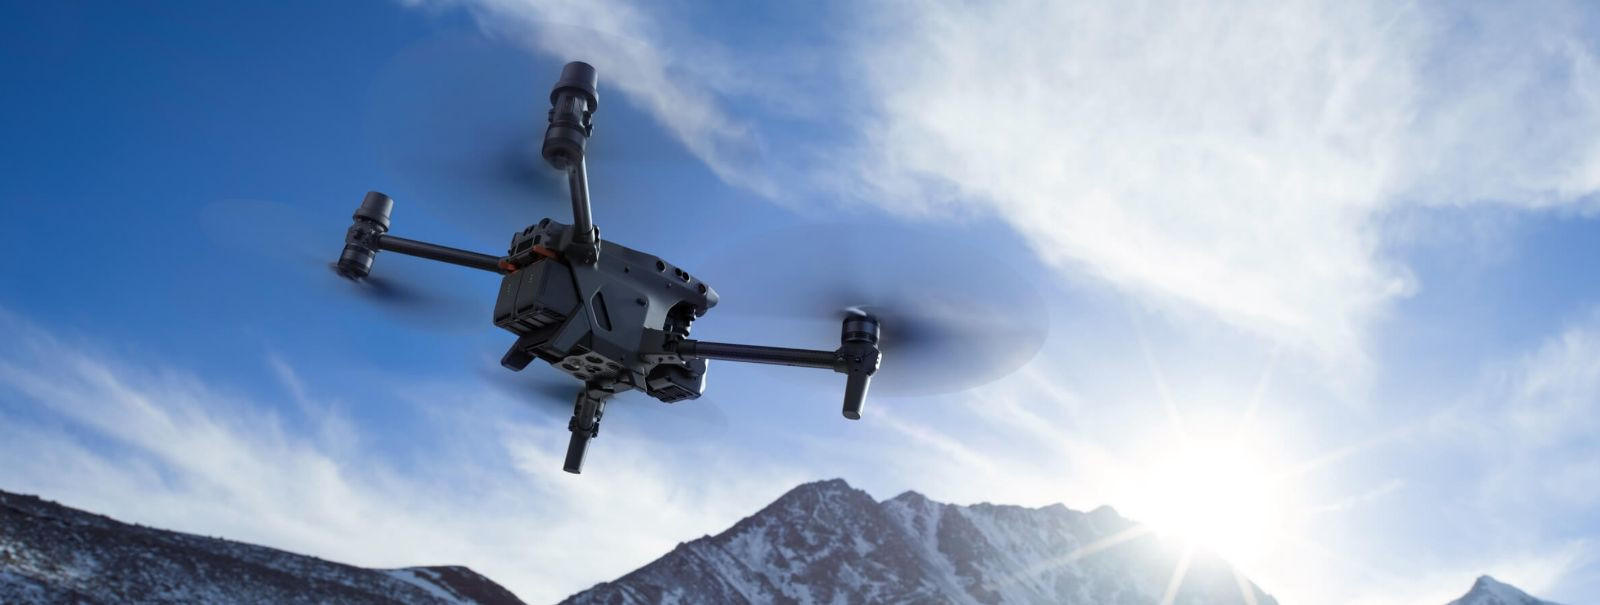 Hiiu Droon OÜ toob turule uue ja võimsa DJI Matrice 30T thermal drooni, mis avardab meie teenuste võimalusi veelgi. See droon on varustatud kõrgetasemelise term